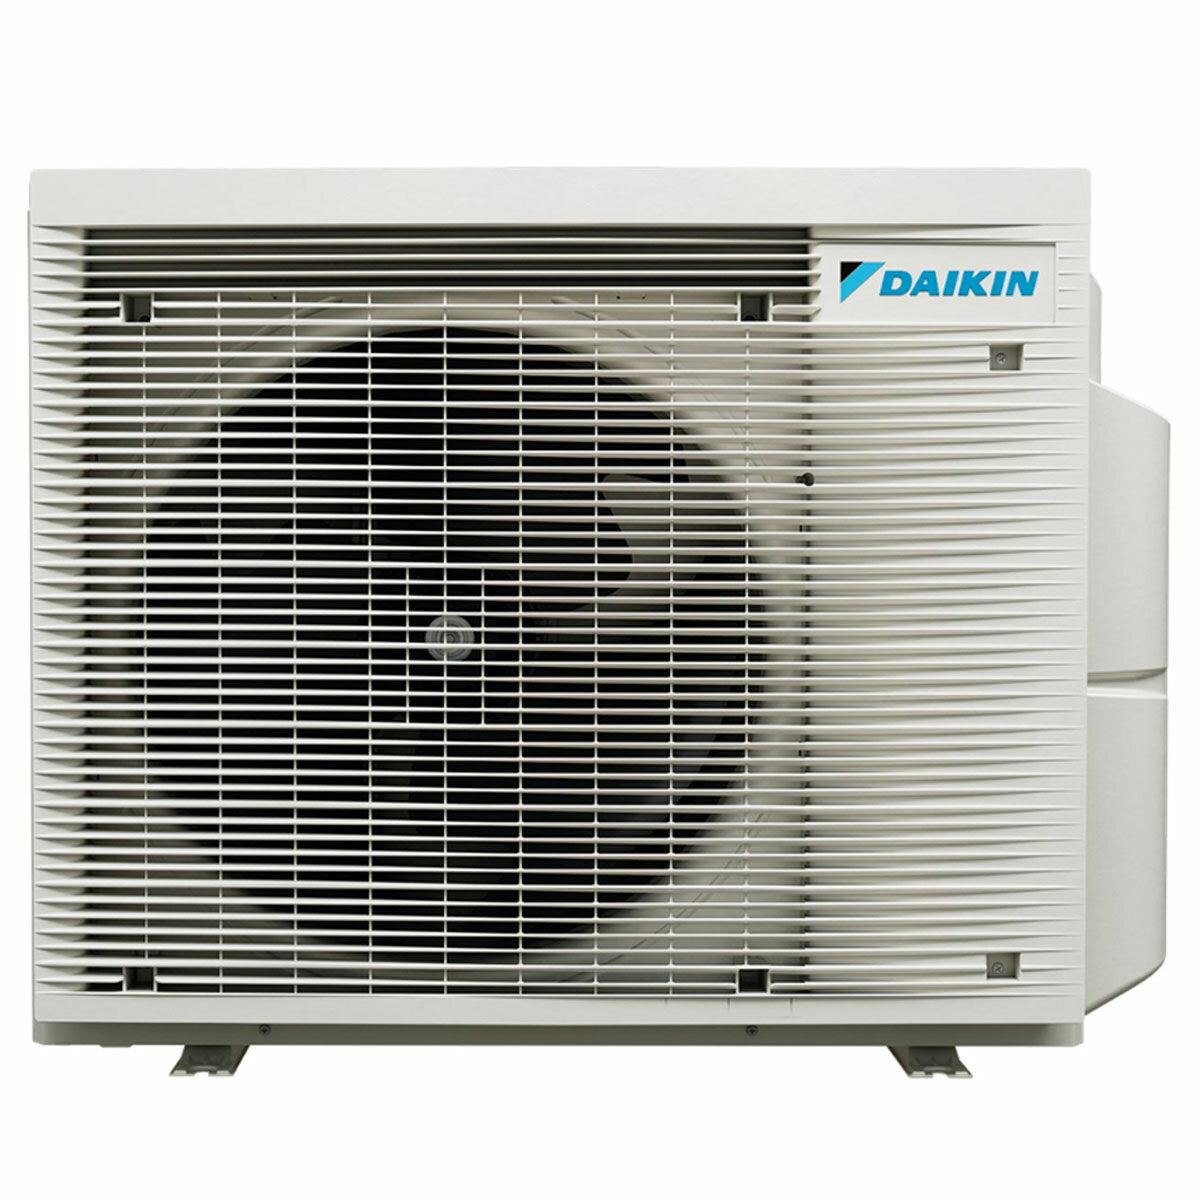 Daikin Emura 3 trial split air conditioner 9000+9000+12000 BTU inverter A+ wifi outdoor unit 6.8 kW White